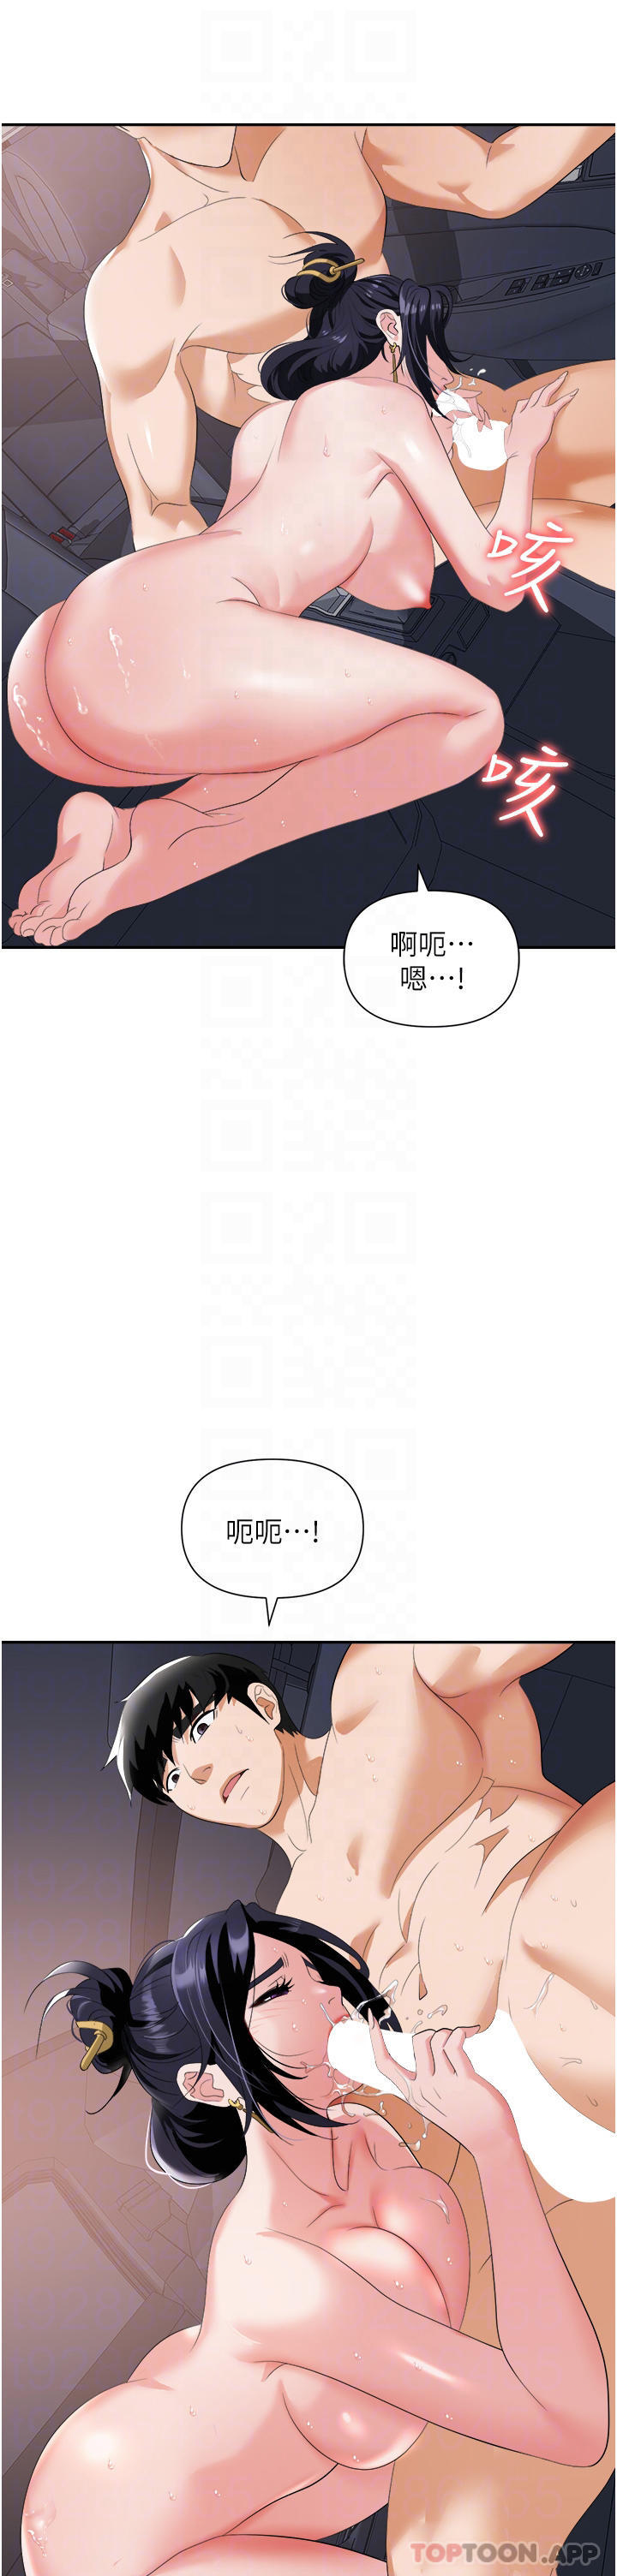 韩国污漫画 職場陷阱 第22话-连续内射人妻 16